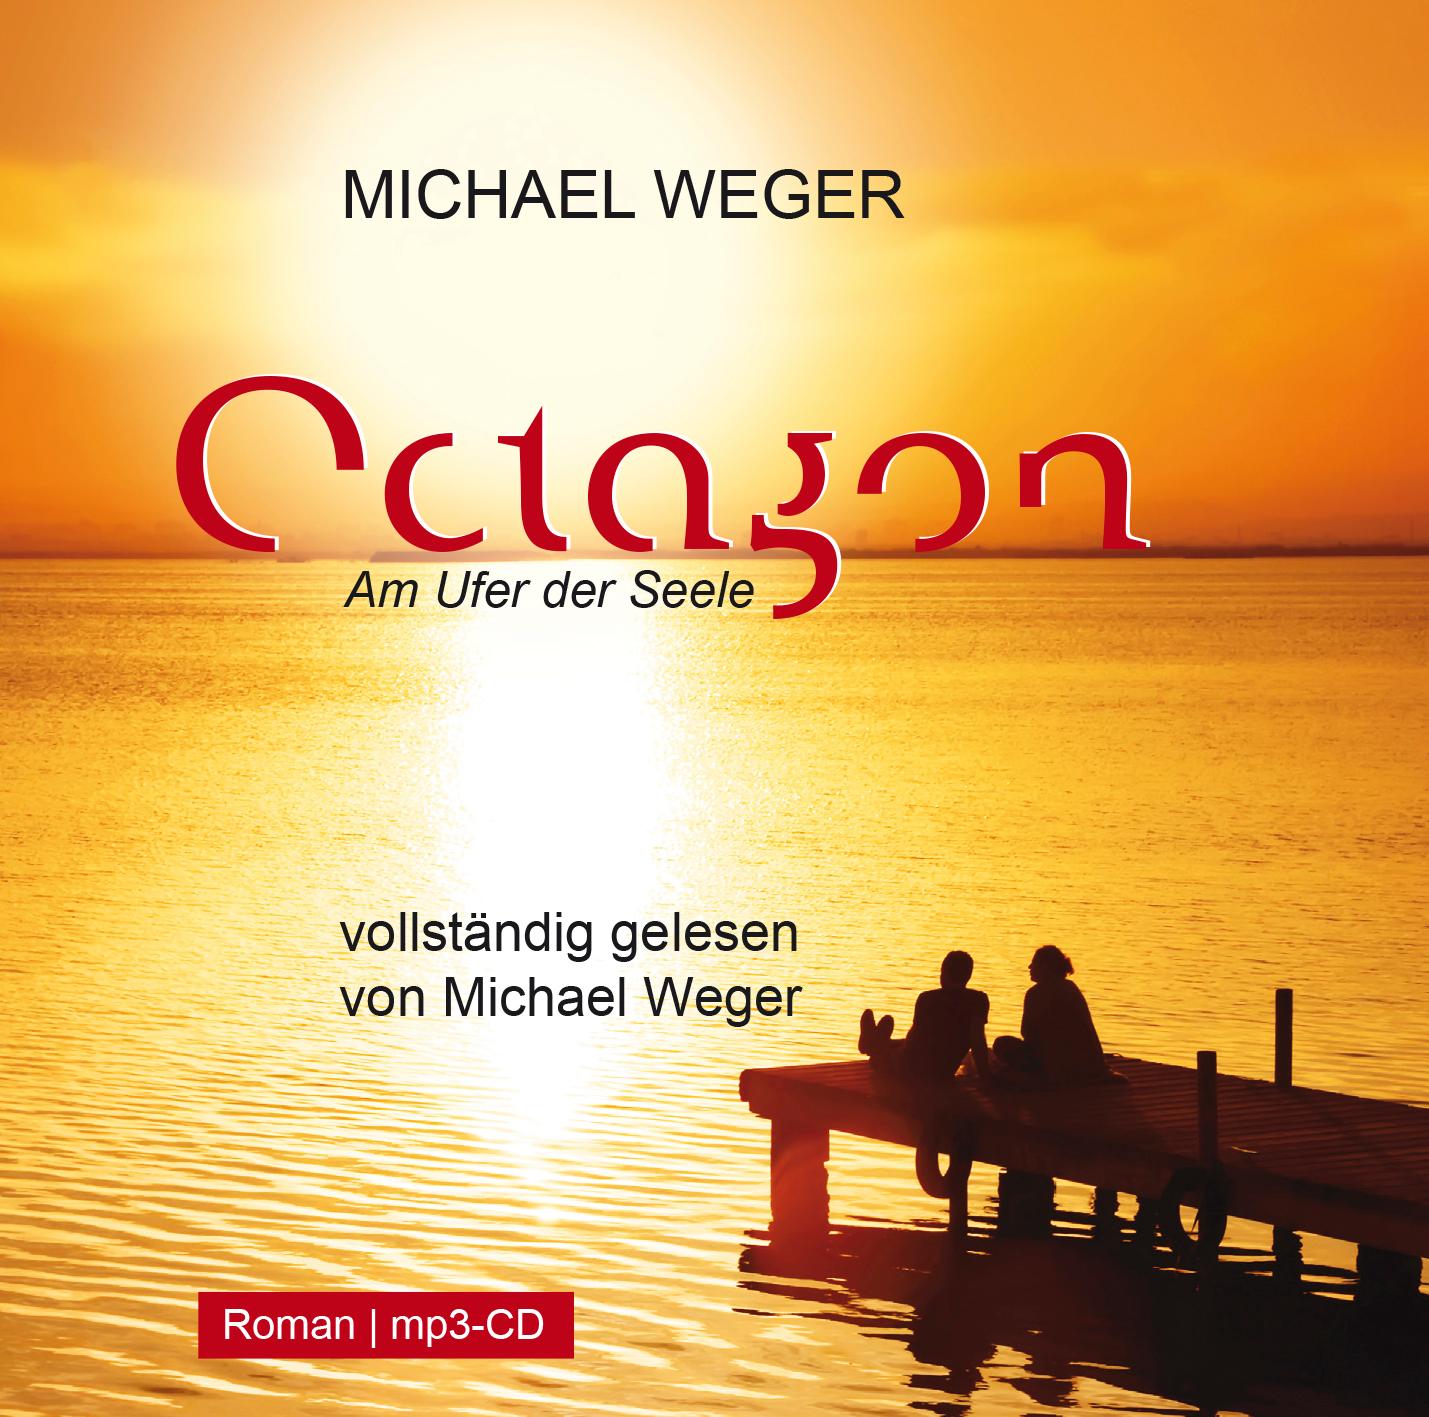 Octagon MP3 CD Am Ufer der Seele Michael Weger